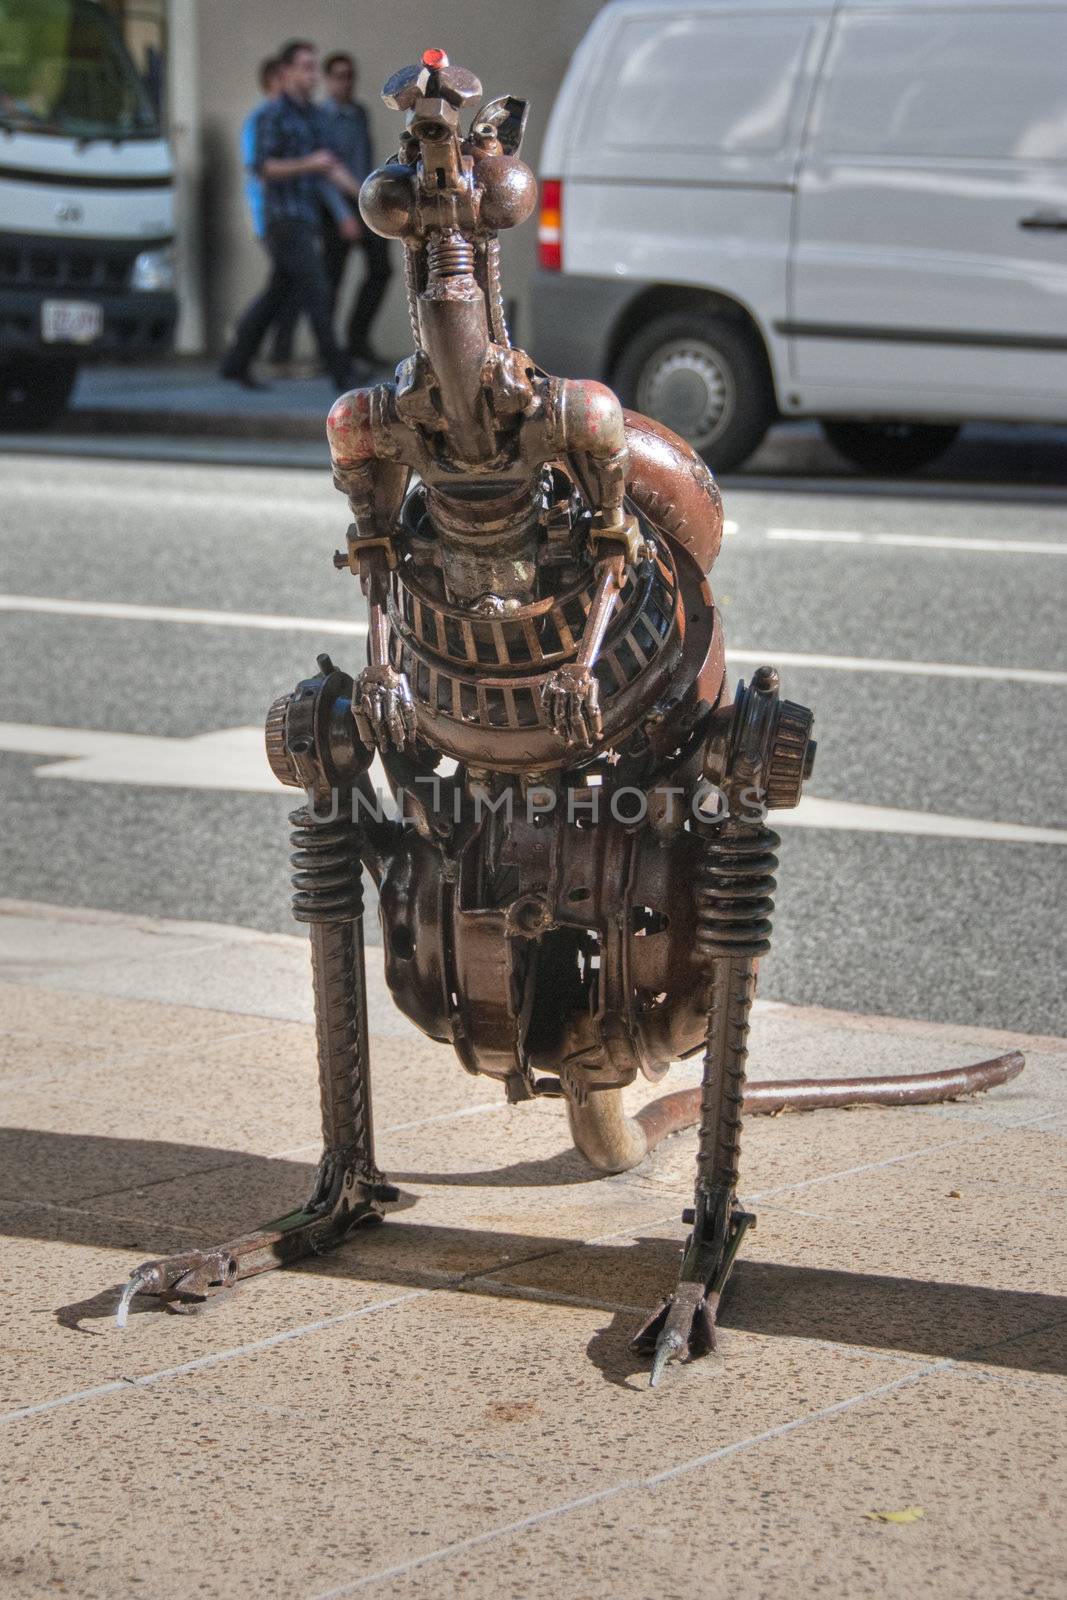 A Kangaroo made of metal in downtown Brisbane